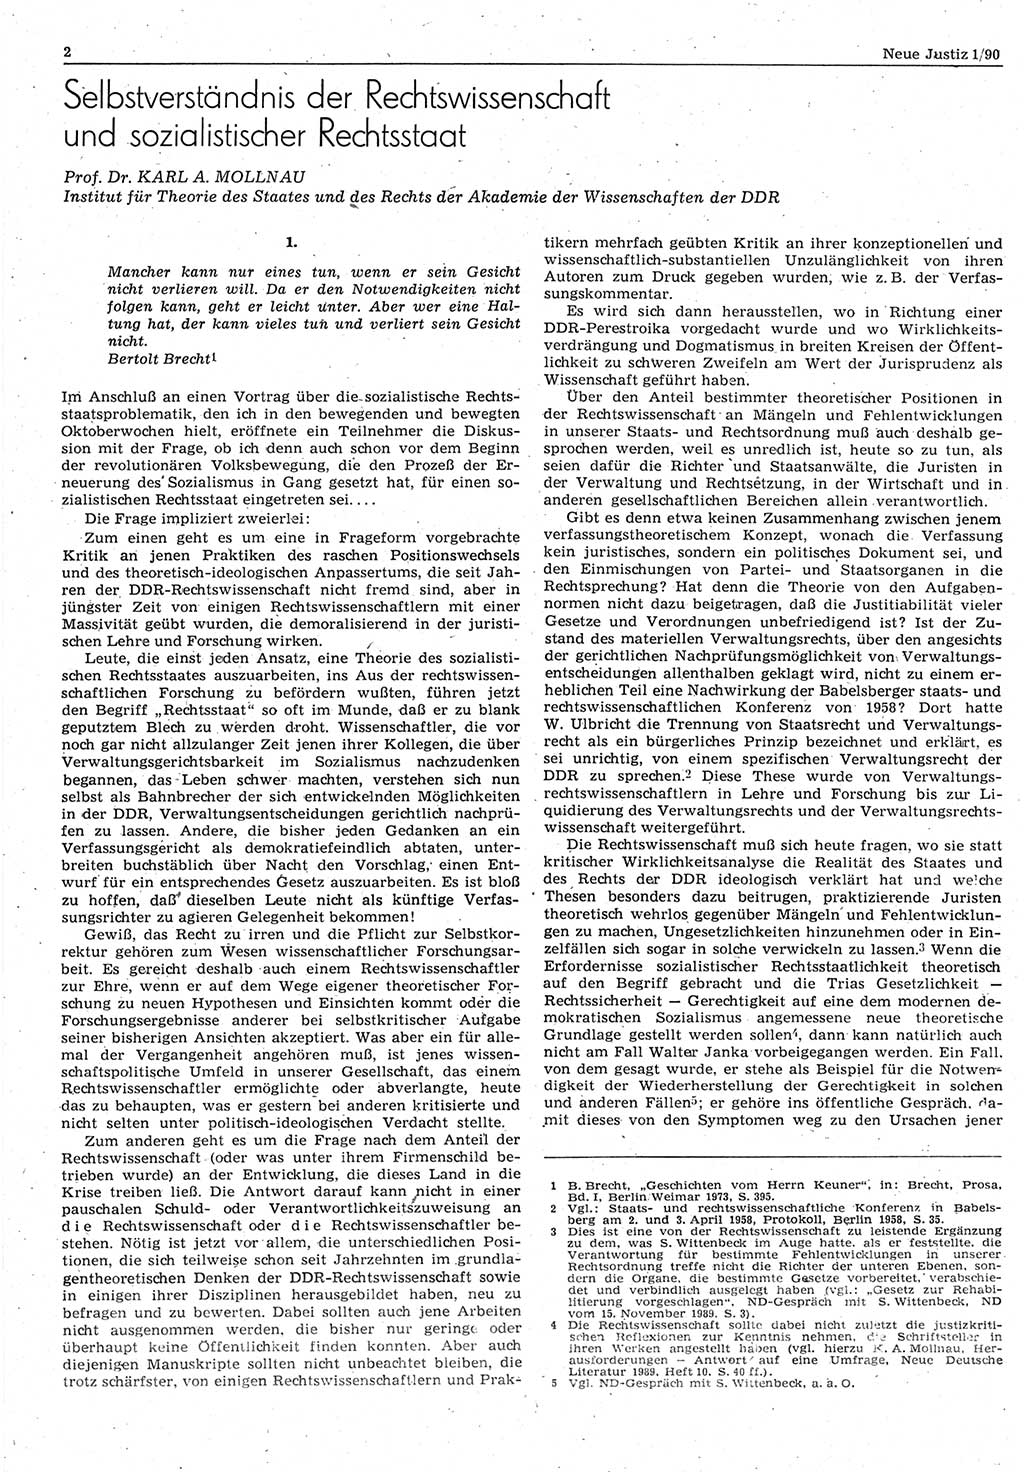 Neue Justiz (NJ), Zeitschrift für Rechtsetzung und Rechtsanwendung [Deutsche Demokratische Republik (DDR)], 44. Jahrgang 1990, Seite 2 (NJ DDR 1990, S. 2)